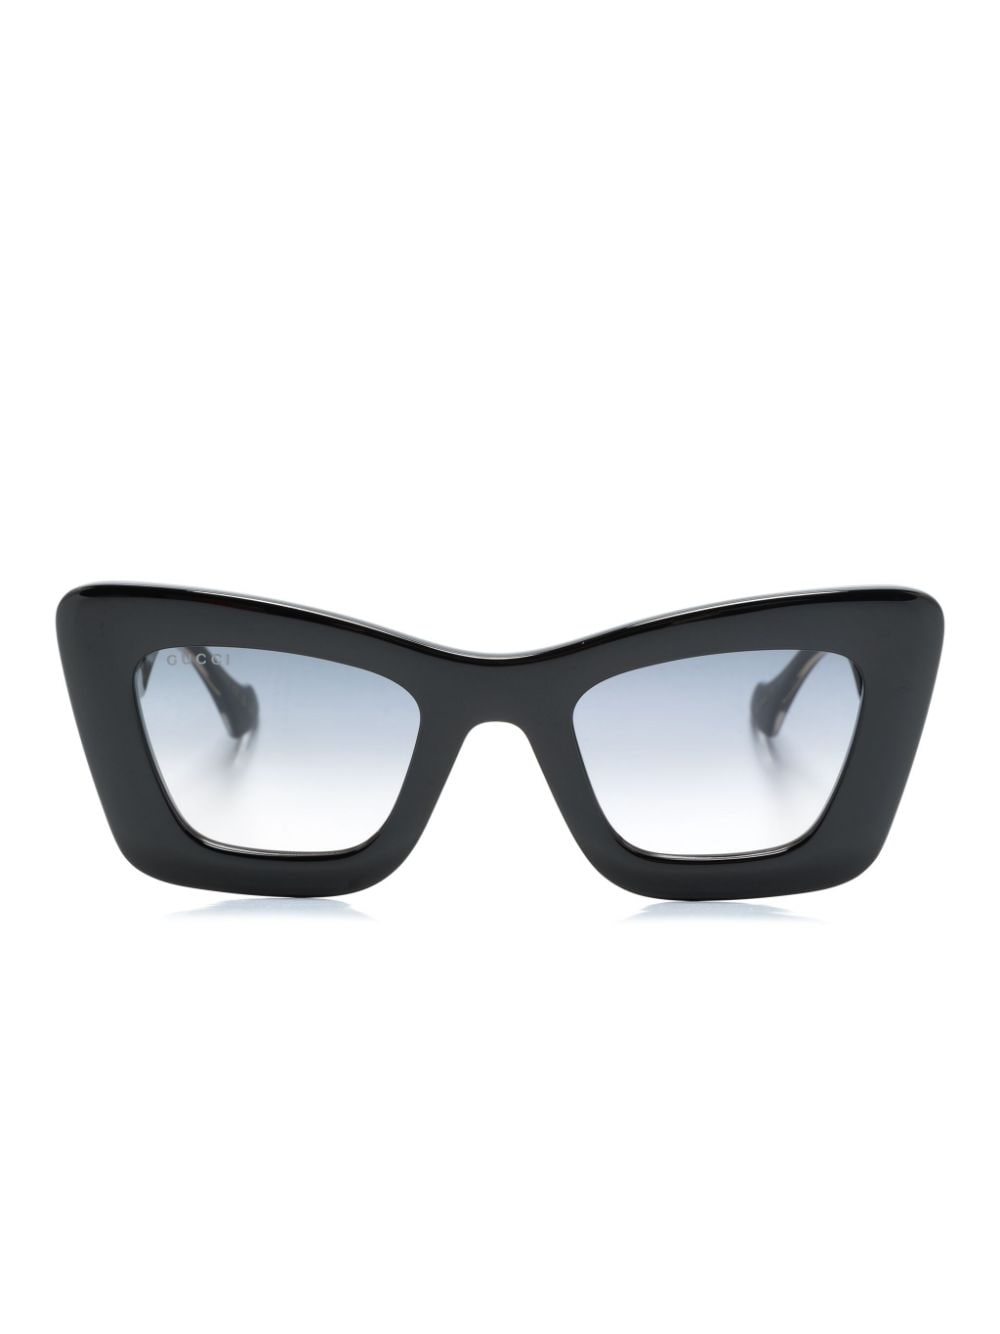 Gucci Eyewear Sonnenbrille mit Butterfly-Gestell - Schwarz von Gucci Eyewear